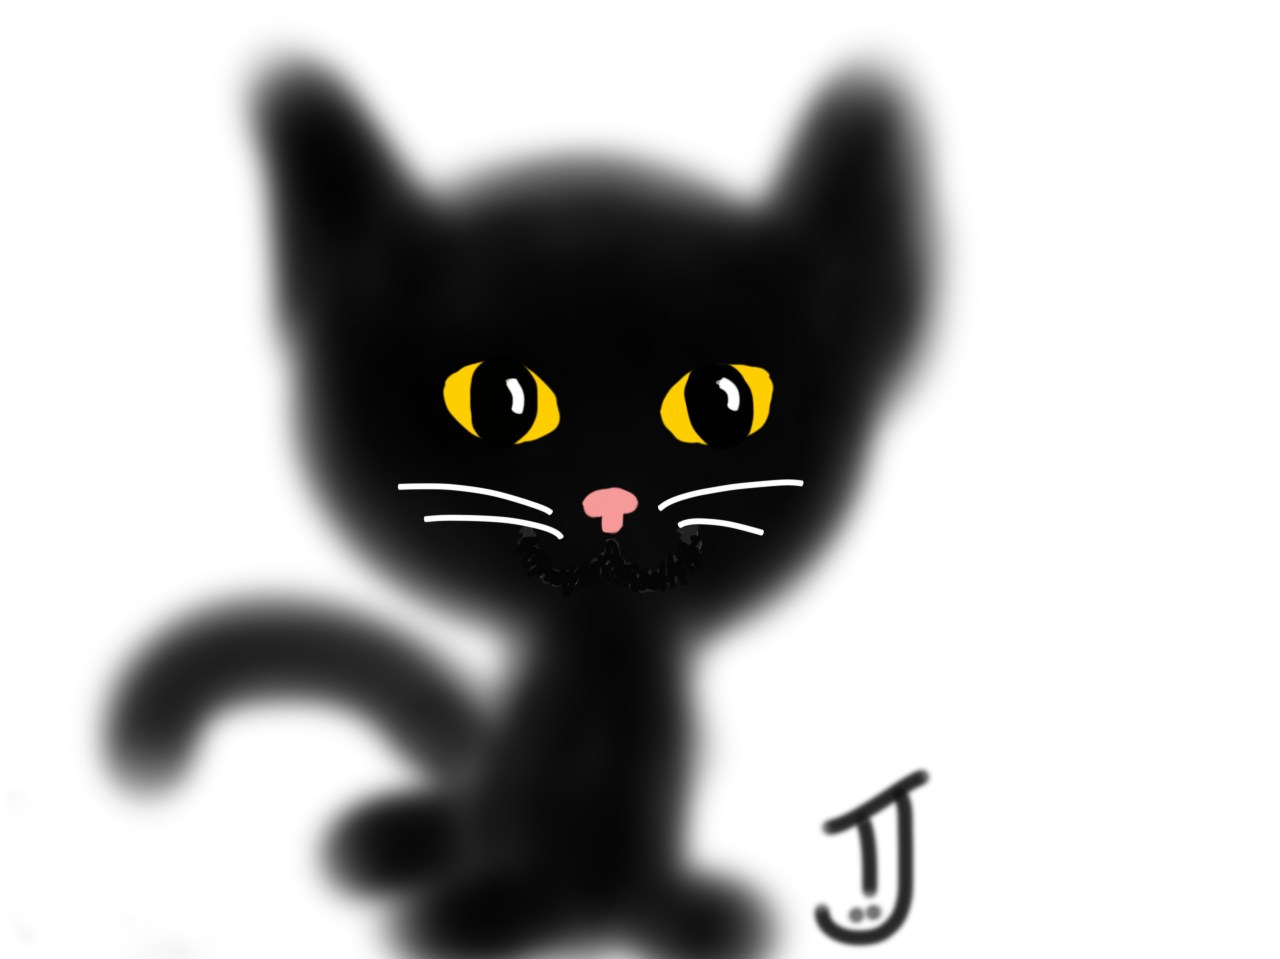 TJ cute black kitten drawing iPad app 2017